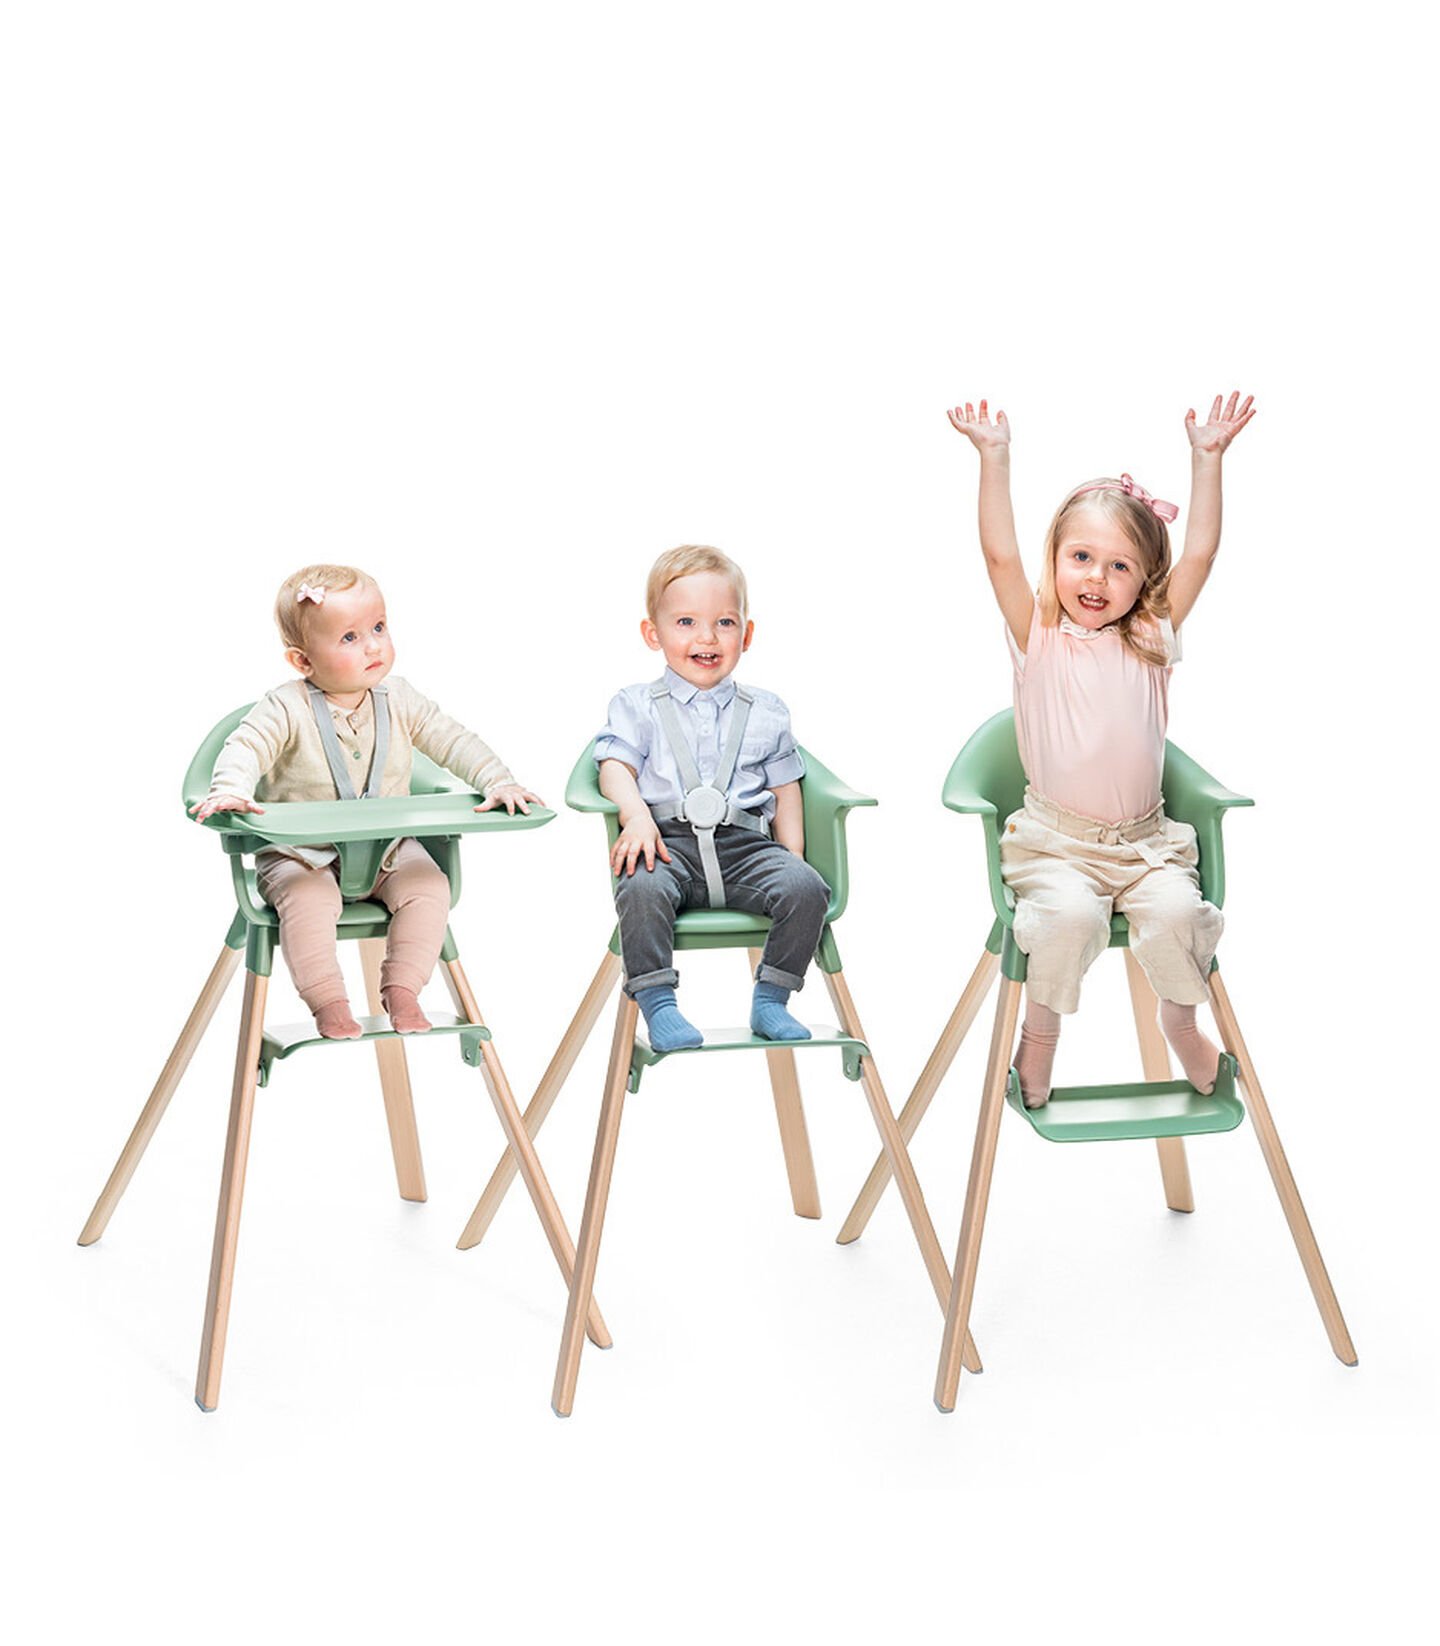 NEW Stokke Clikk High Chair – Full Review! – The PishPoshBaby Blog